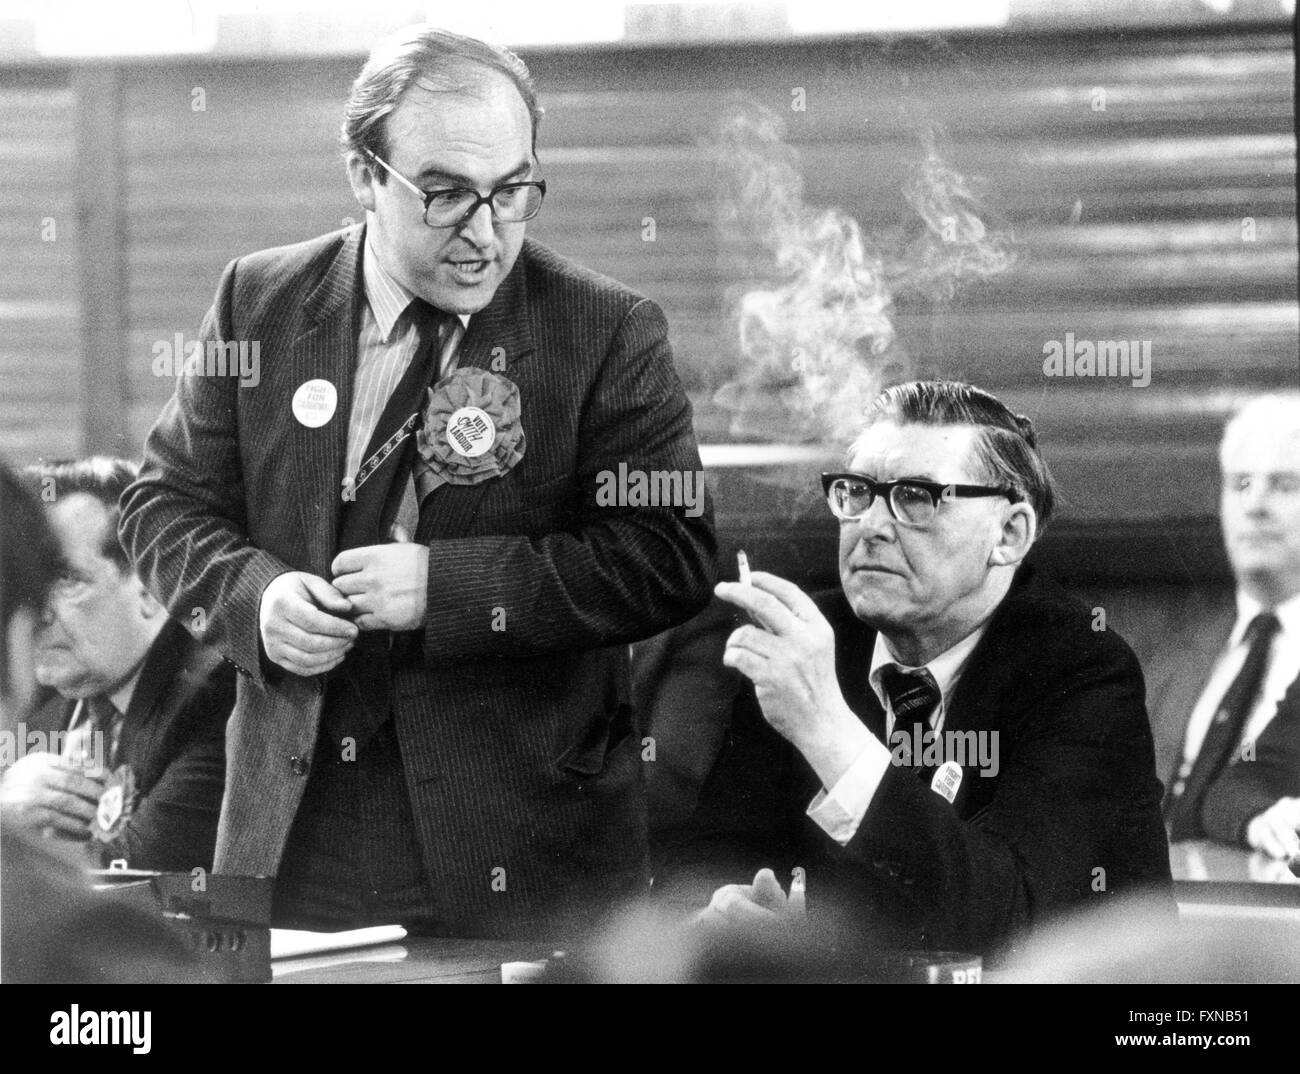 John Smith, député travailliste écossais avec leader mick mcgahey mineurs à la mine pendant la Bilston Glen de grève des mineurs de 1984 Banque D'Images